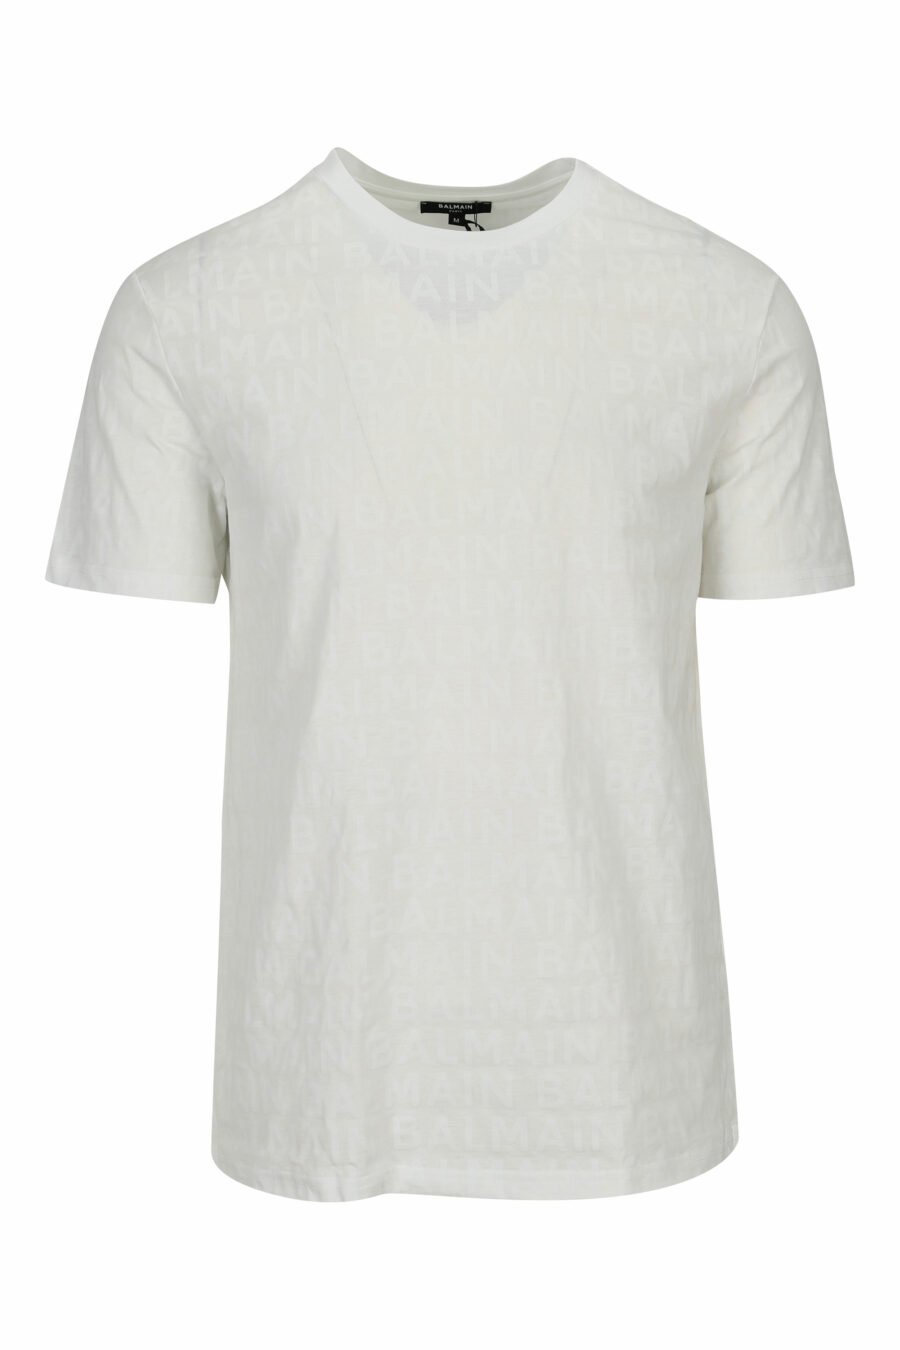 T-shirt branca com monograma monocromático - 8032674525390